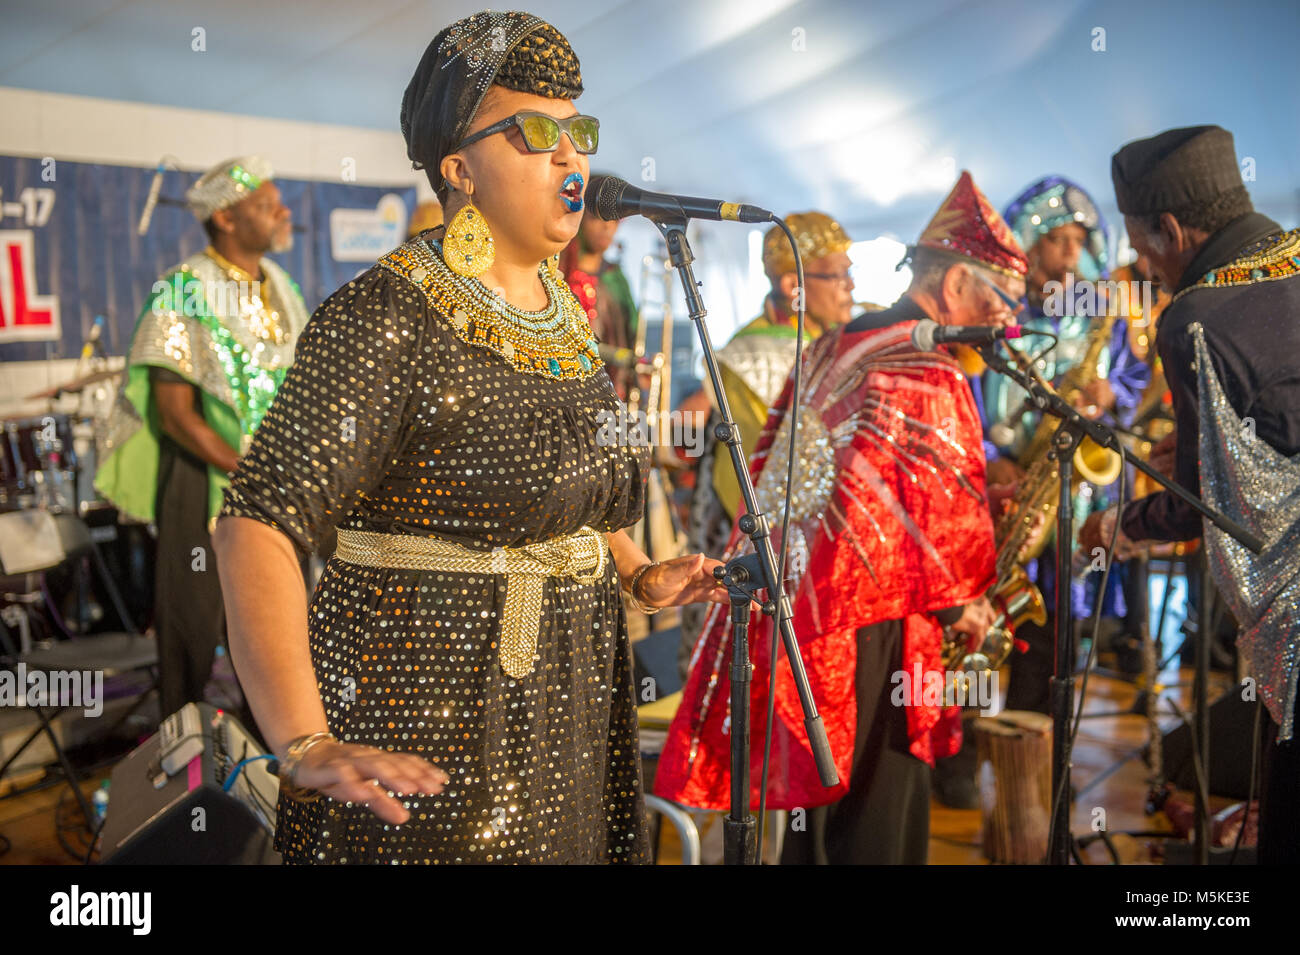 La musique cosmique de Sun Ra Arkestra groupe effectuer ensemble sur scène pour le Festival Folklorique National Life, Greensboro, Caroline du Nord. Banque D'Images